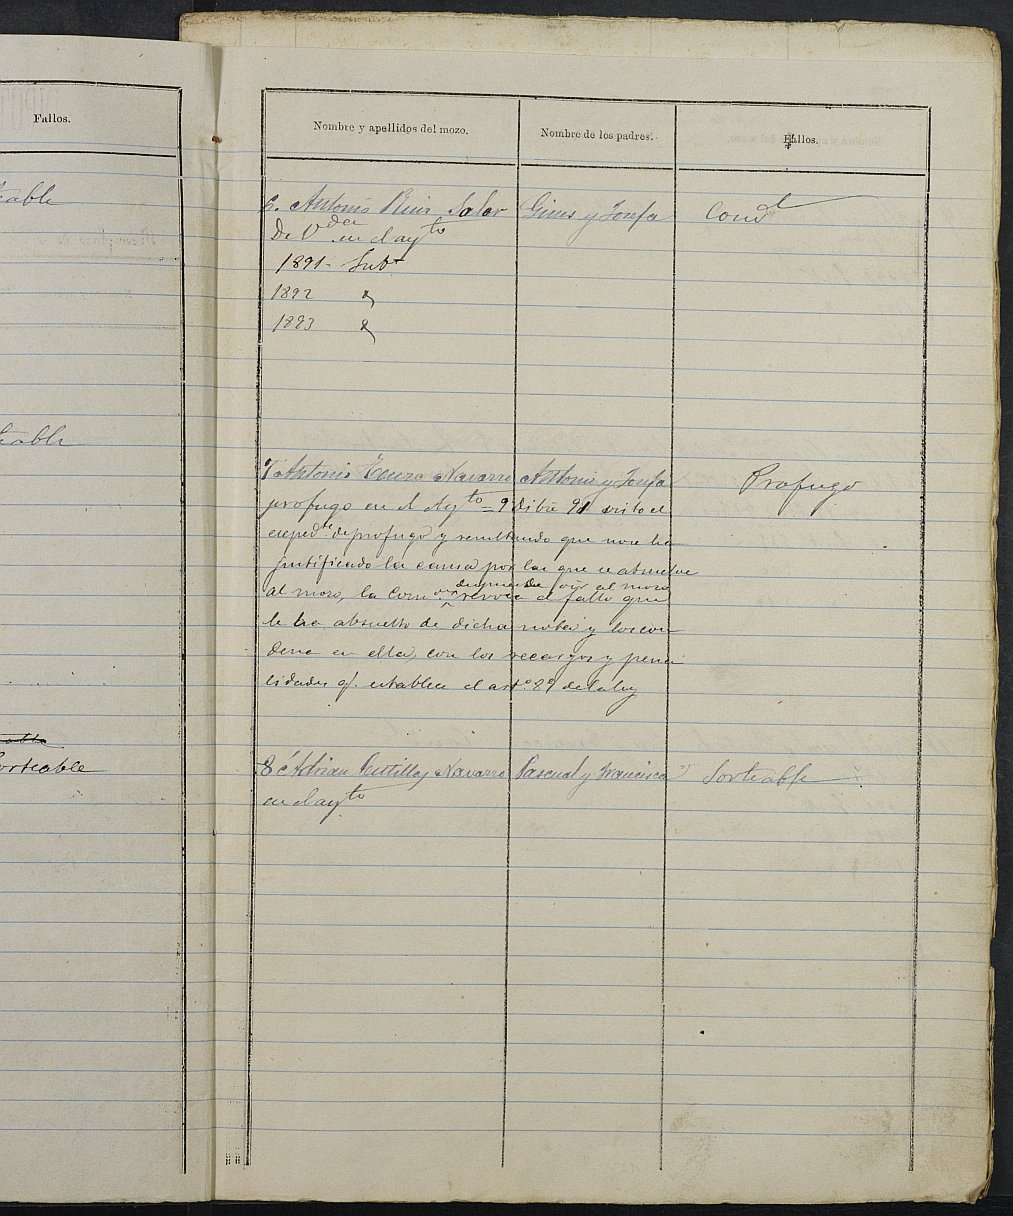 Relación de individuos declarados soldados e ingresados en Caja del Ayuntamiento de Abanilla de 1890.